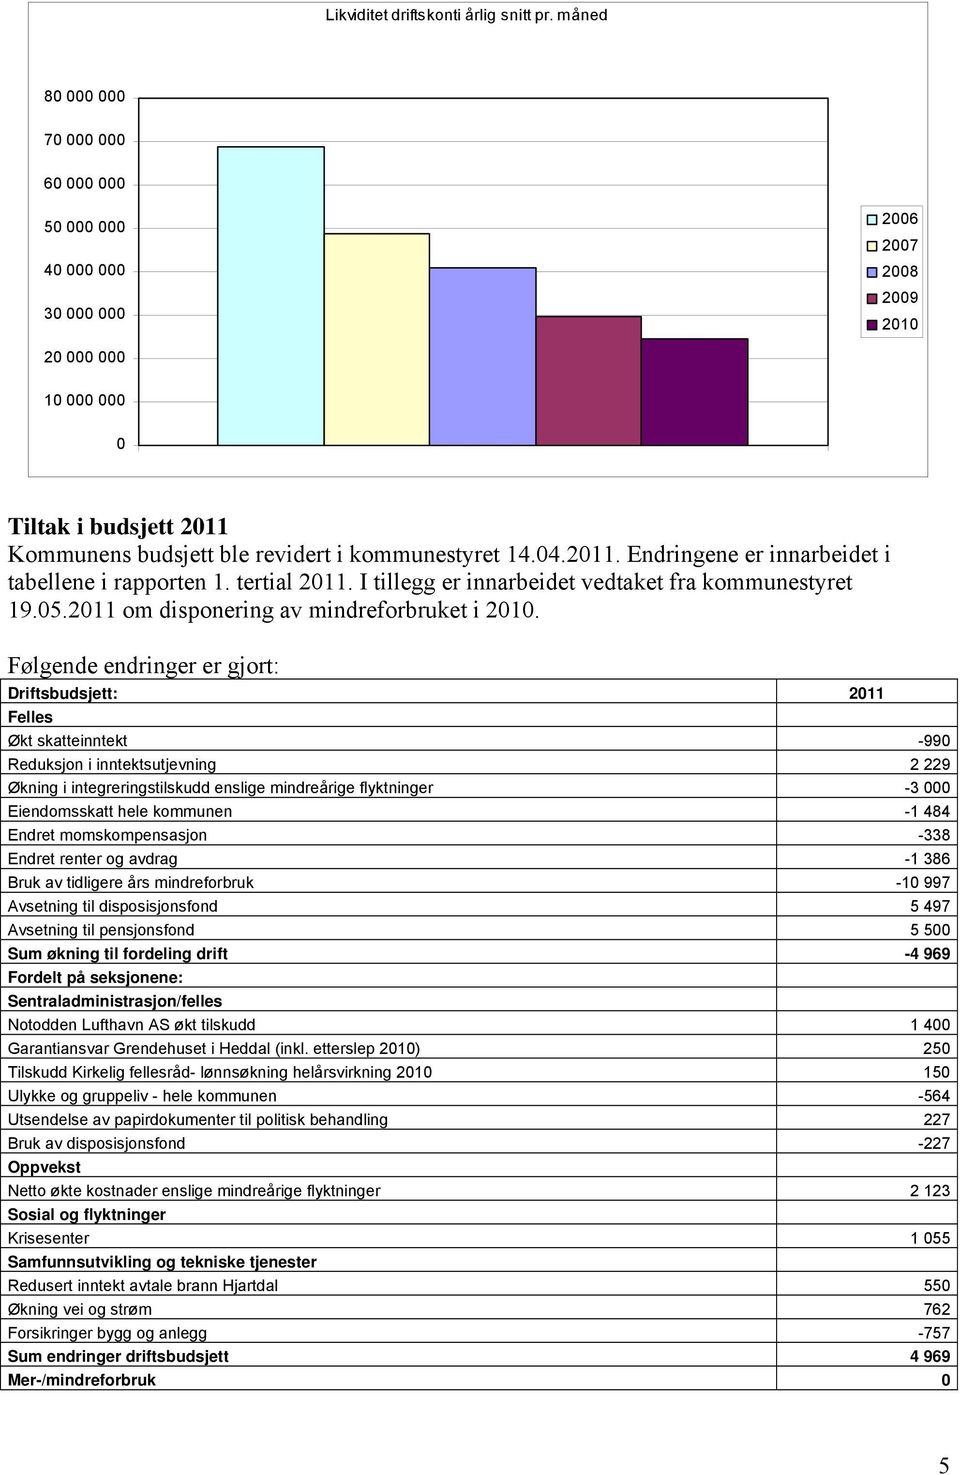 2011. Endringene er innarbeidet i tabellene i rapporten 1. tertial 2011. I tillegg er innarbeidet vedtaket fra kommunestyret 19.05.2011 om disponering av mindreforbruket i 2010.